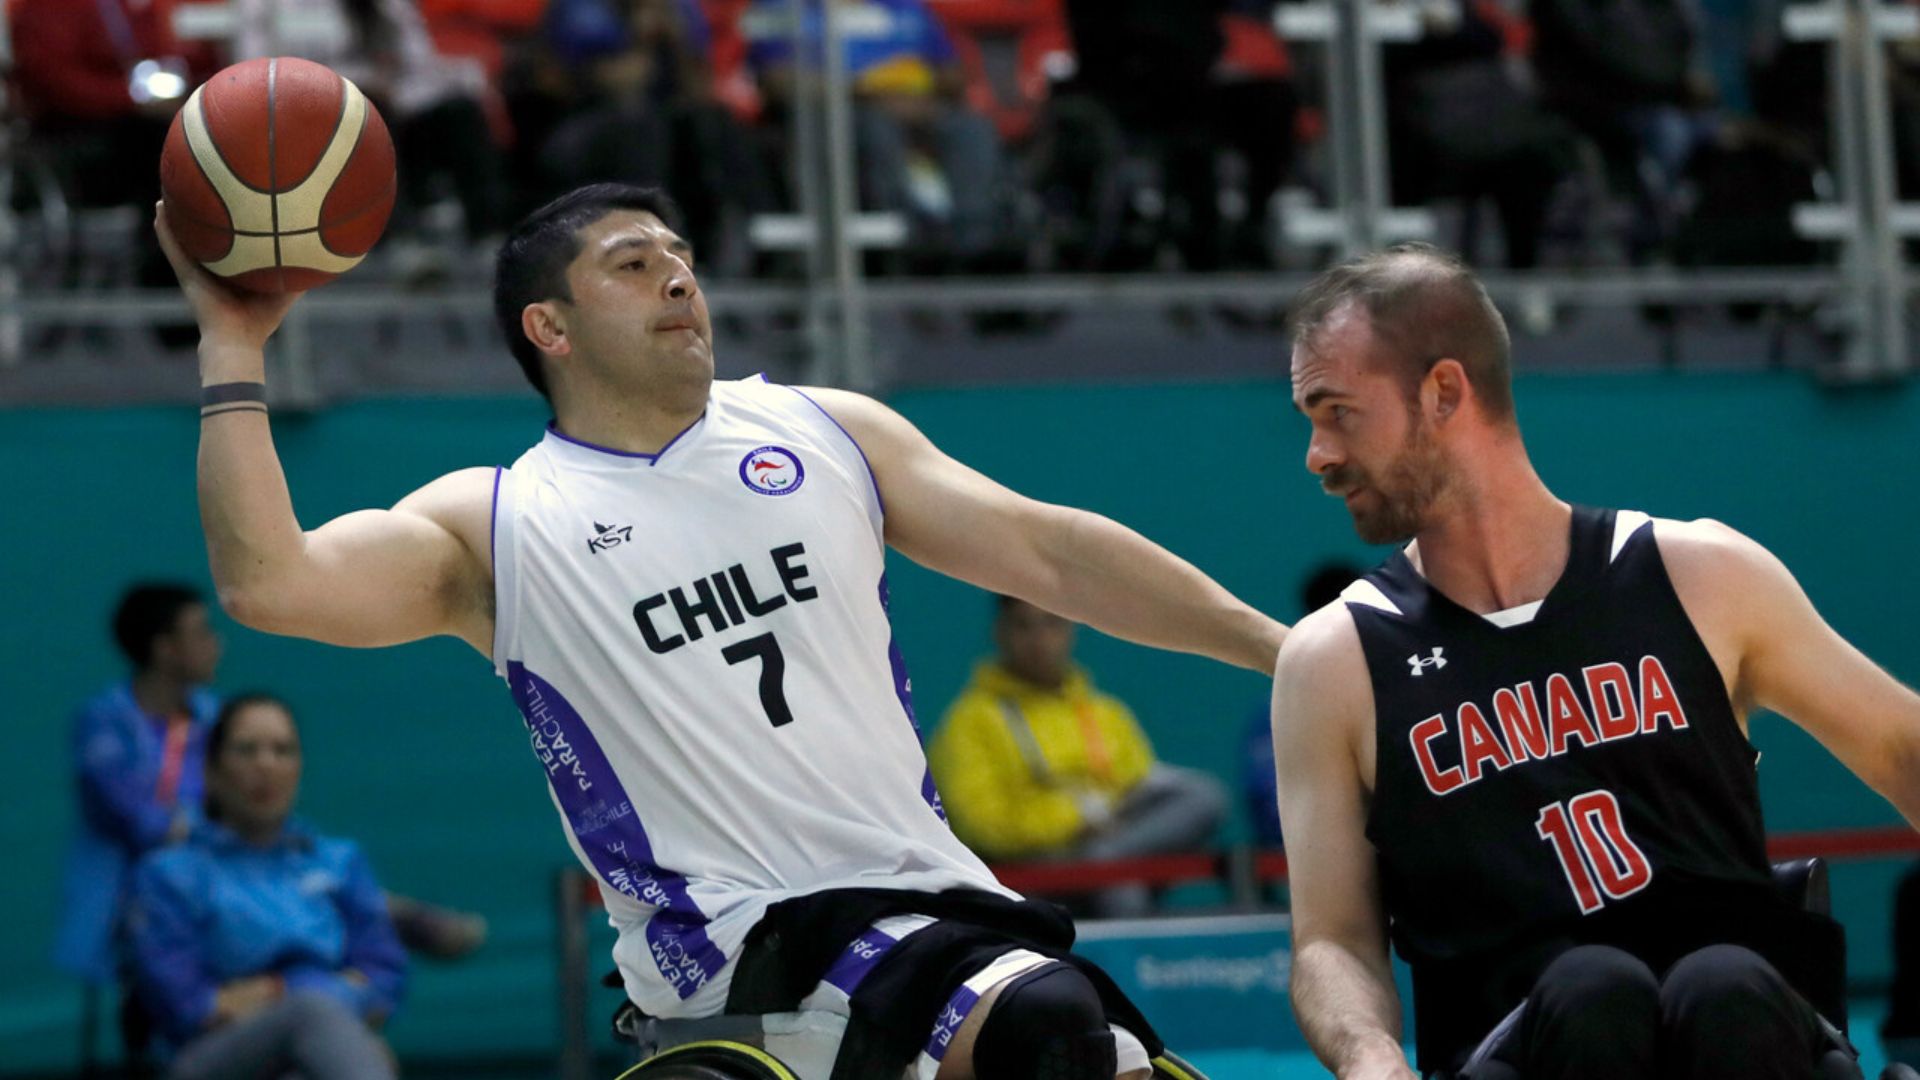 Chile no pudo con Canadá en su estreno del básquetbol en silla de ruedas